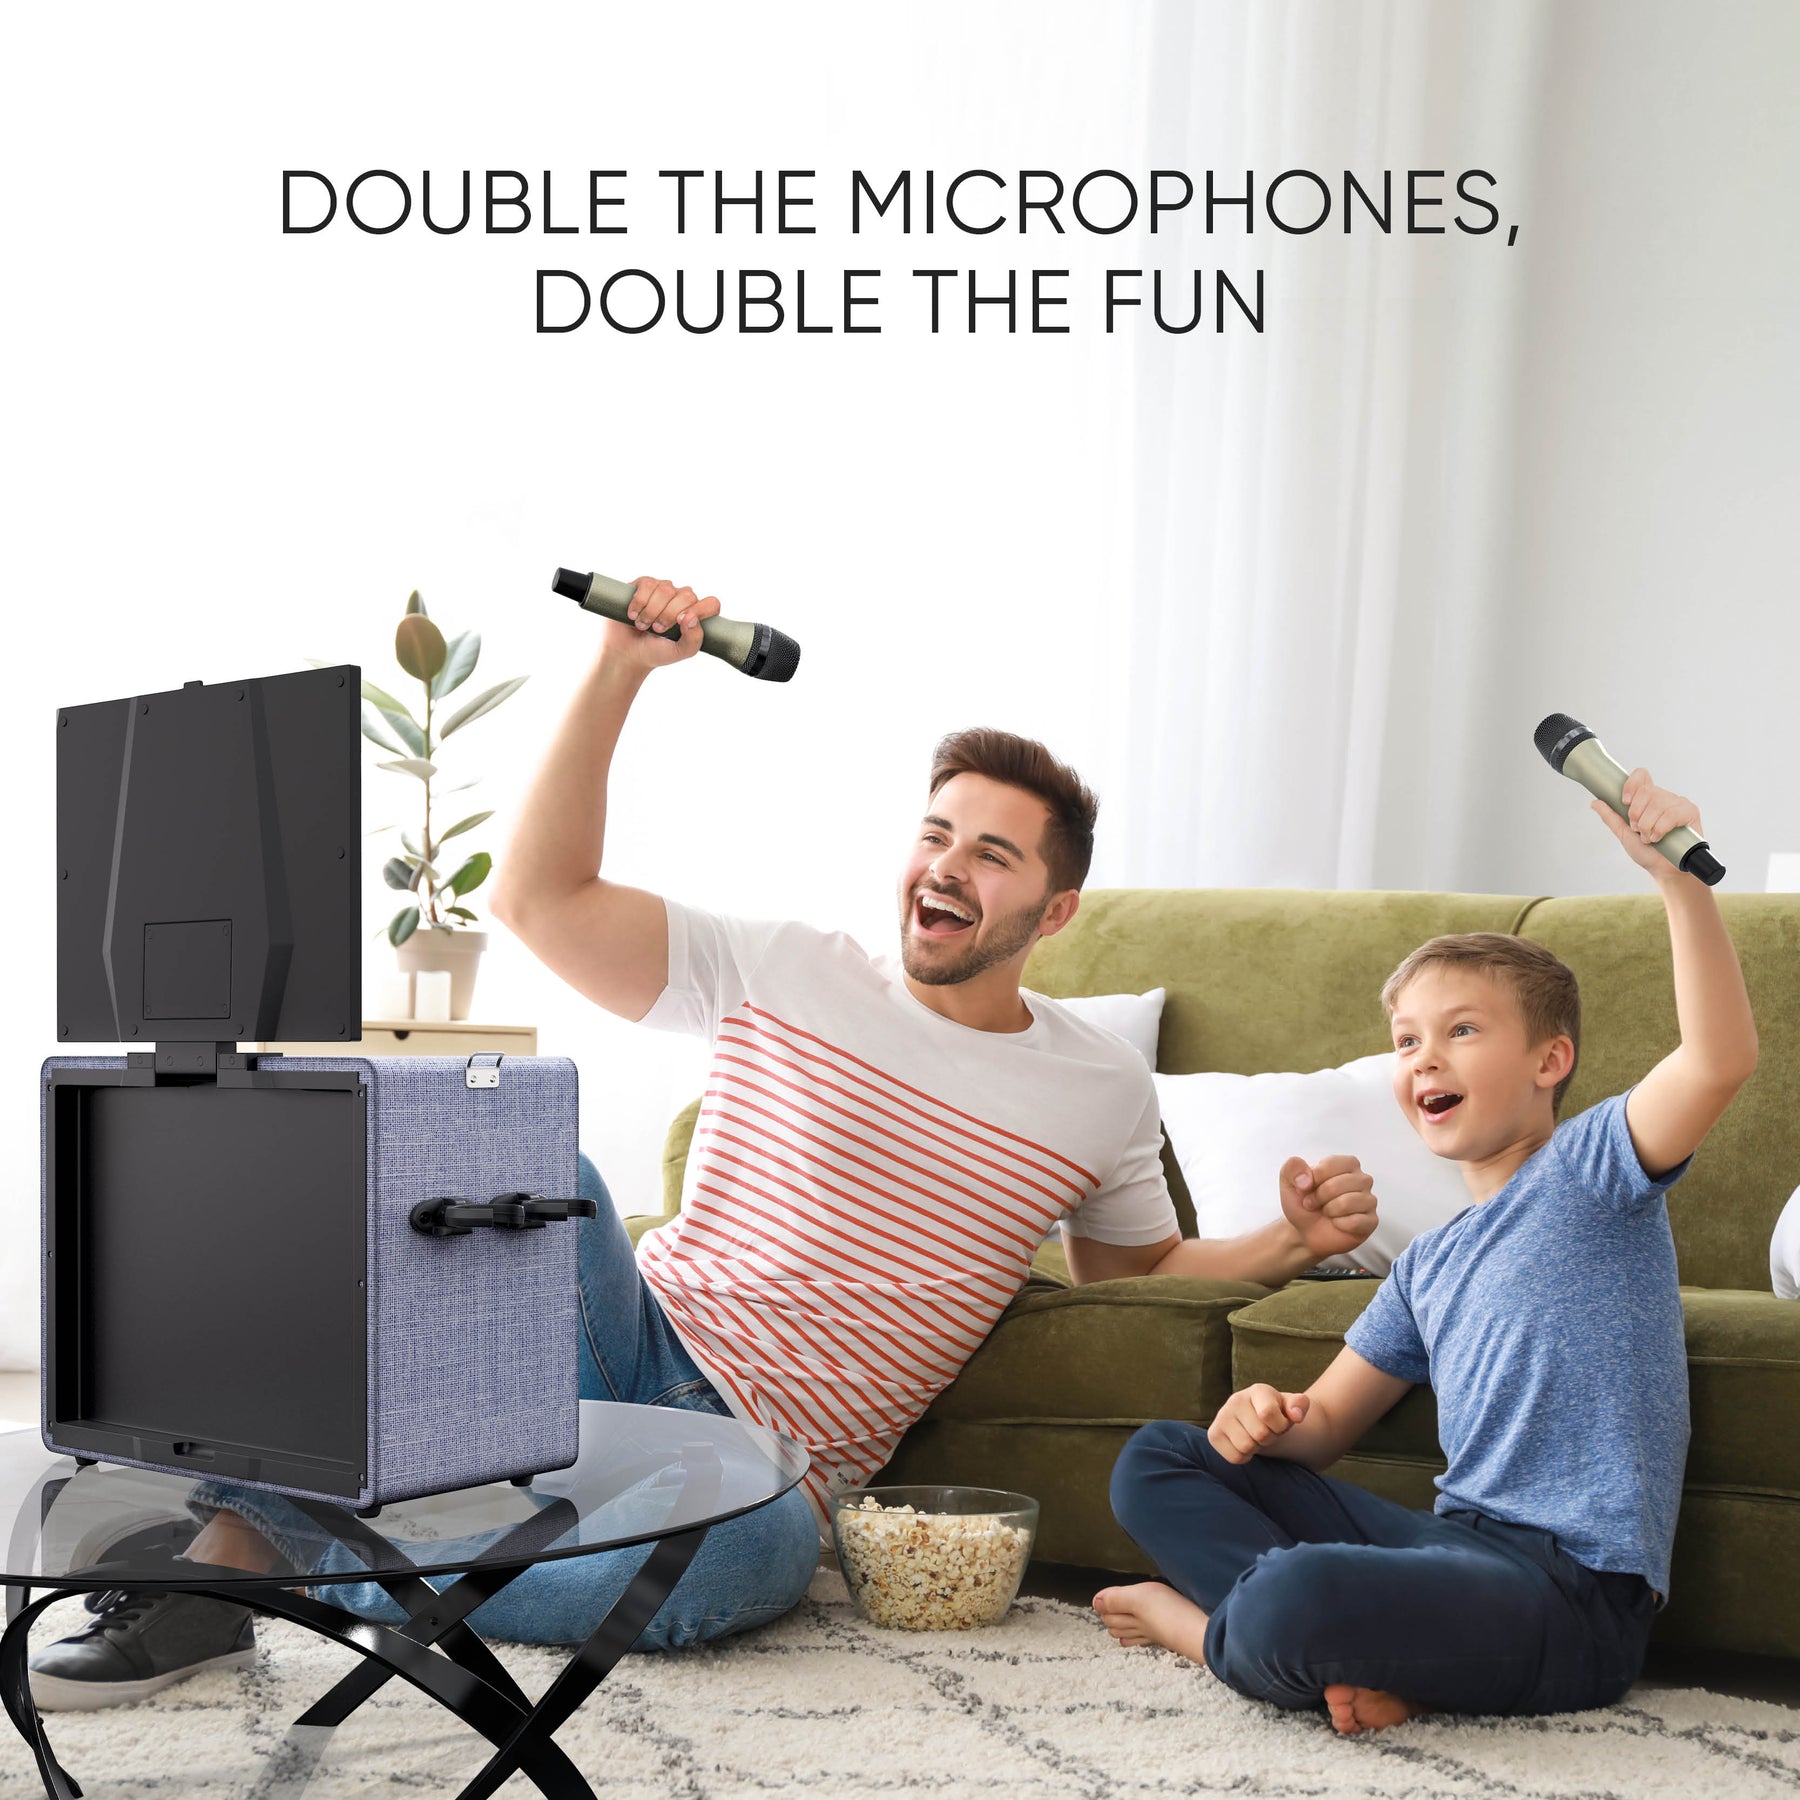 MASINGO Karaoke Machine for Adults & Kids with 2 Wireless